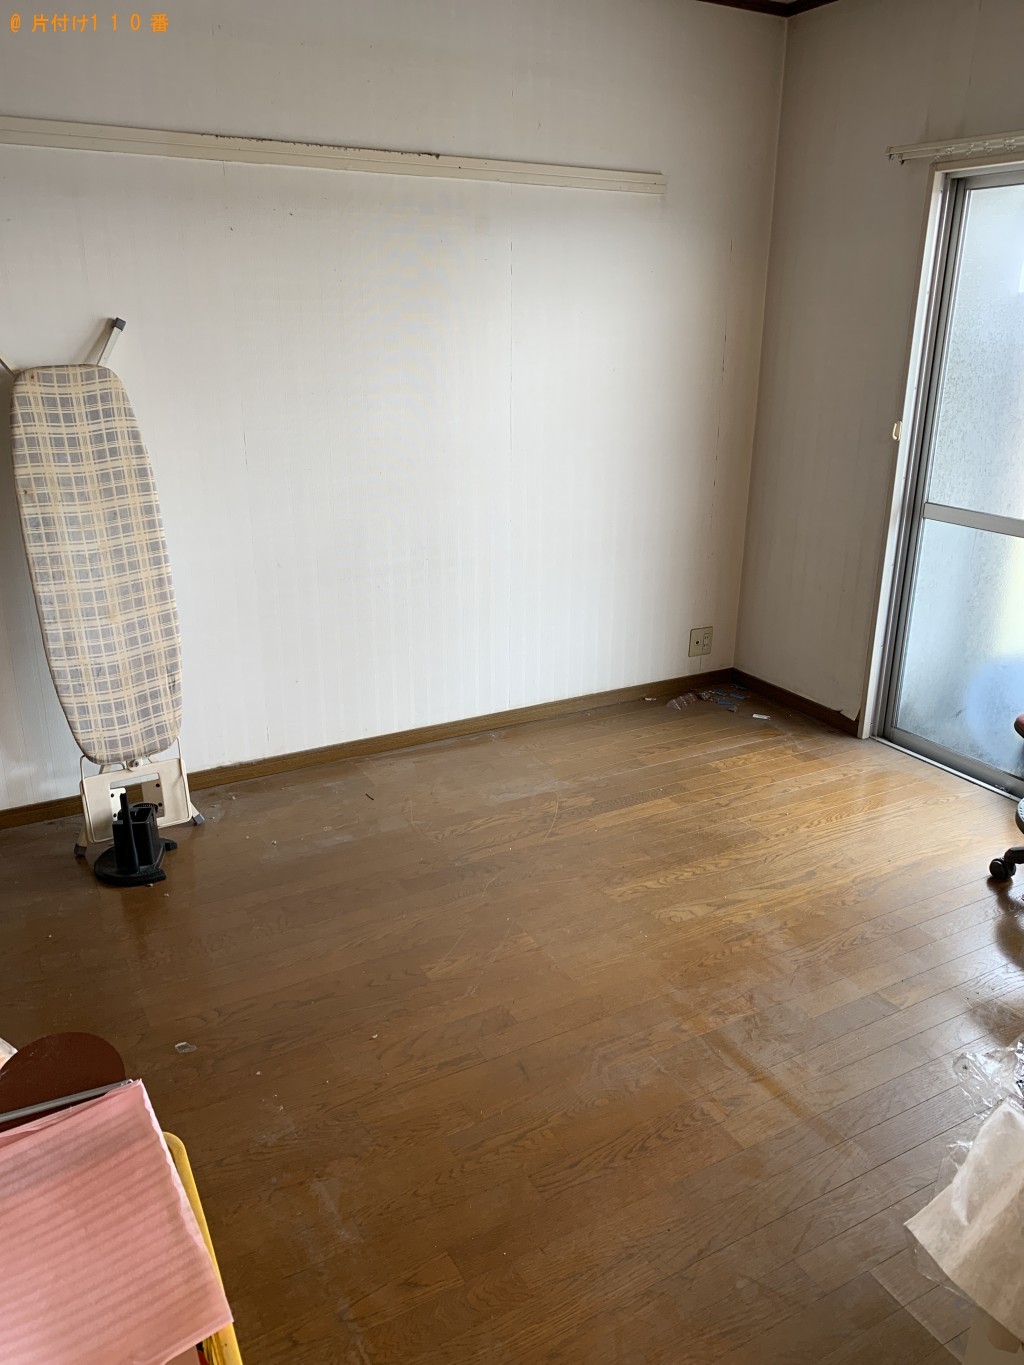 【福岡市東区】パソコン、タンス、折り畳みベッド等の回収・処分